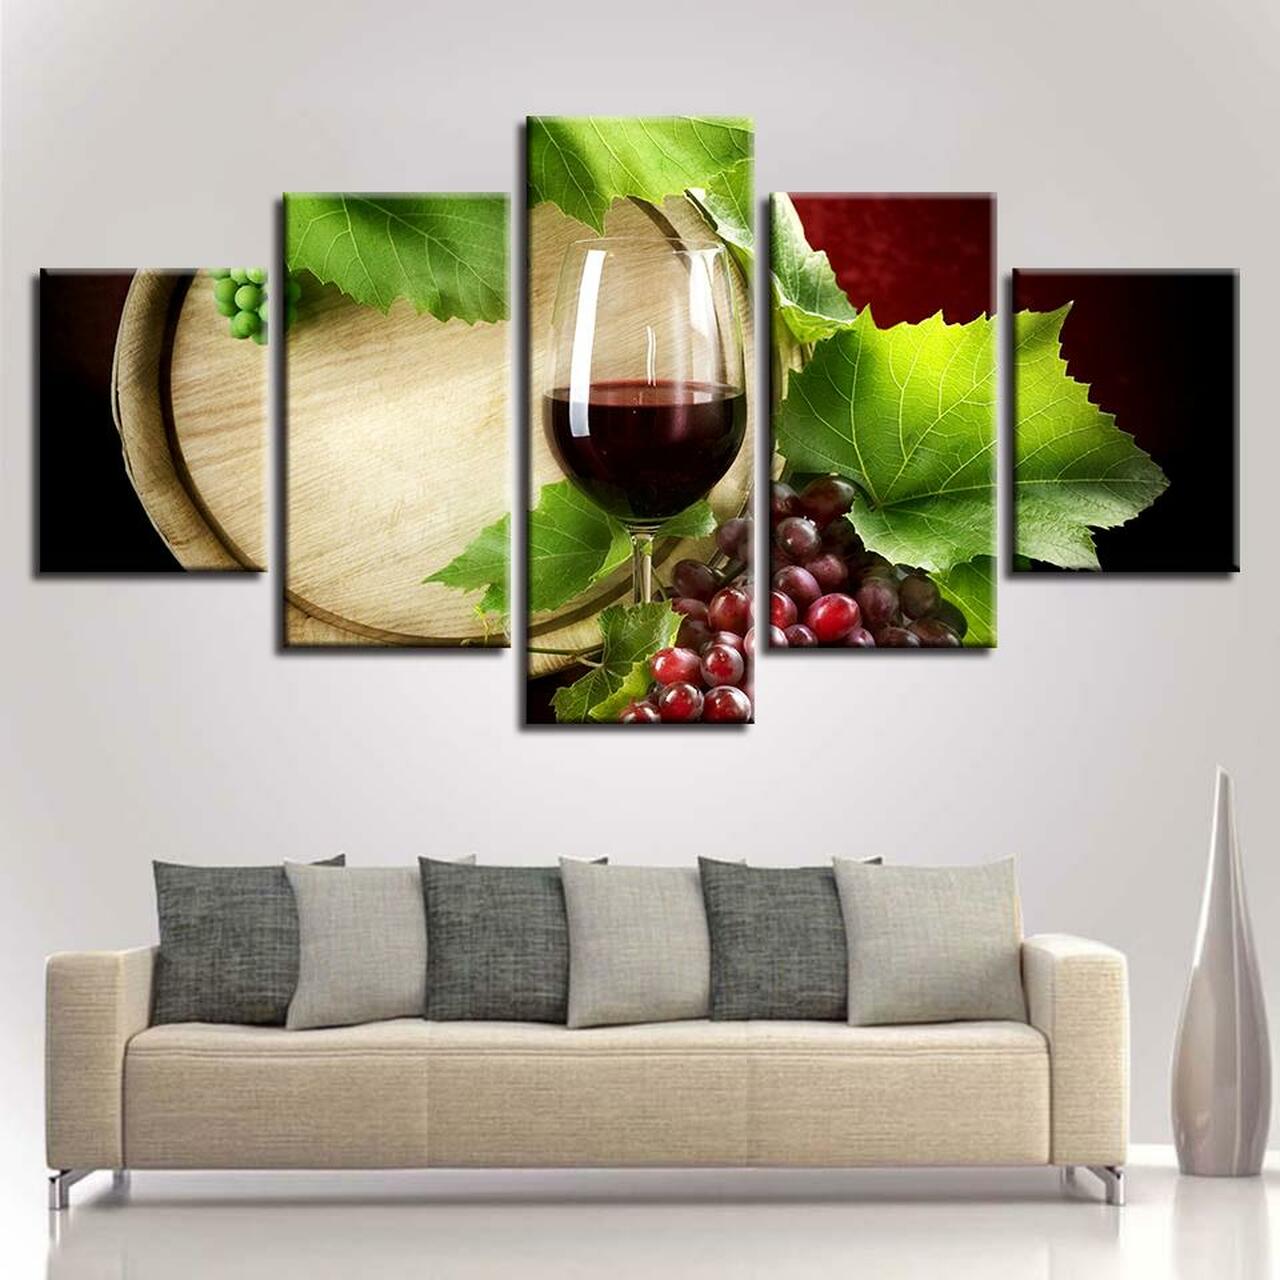 wine and green leaves 5 pices peinture sur toile impression sur toile toile art pour la dcoration intrieureksi2f